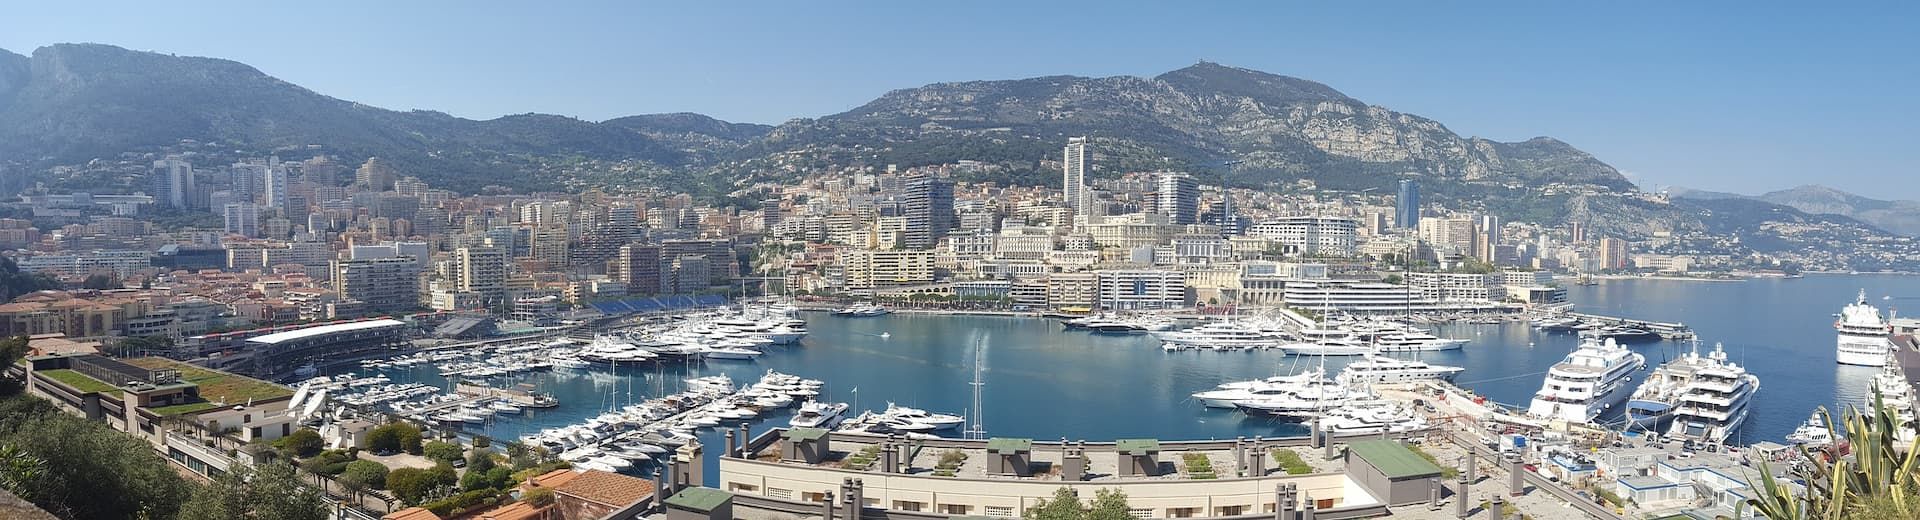 Monaco yacht charter, luxury yacht charter Monaco, Monaco yachts